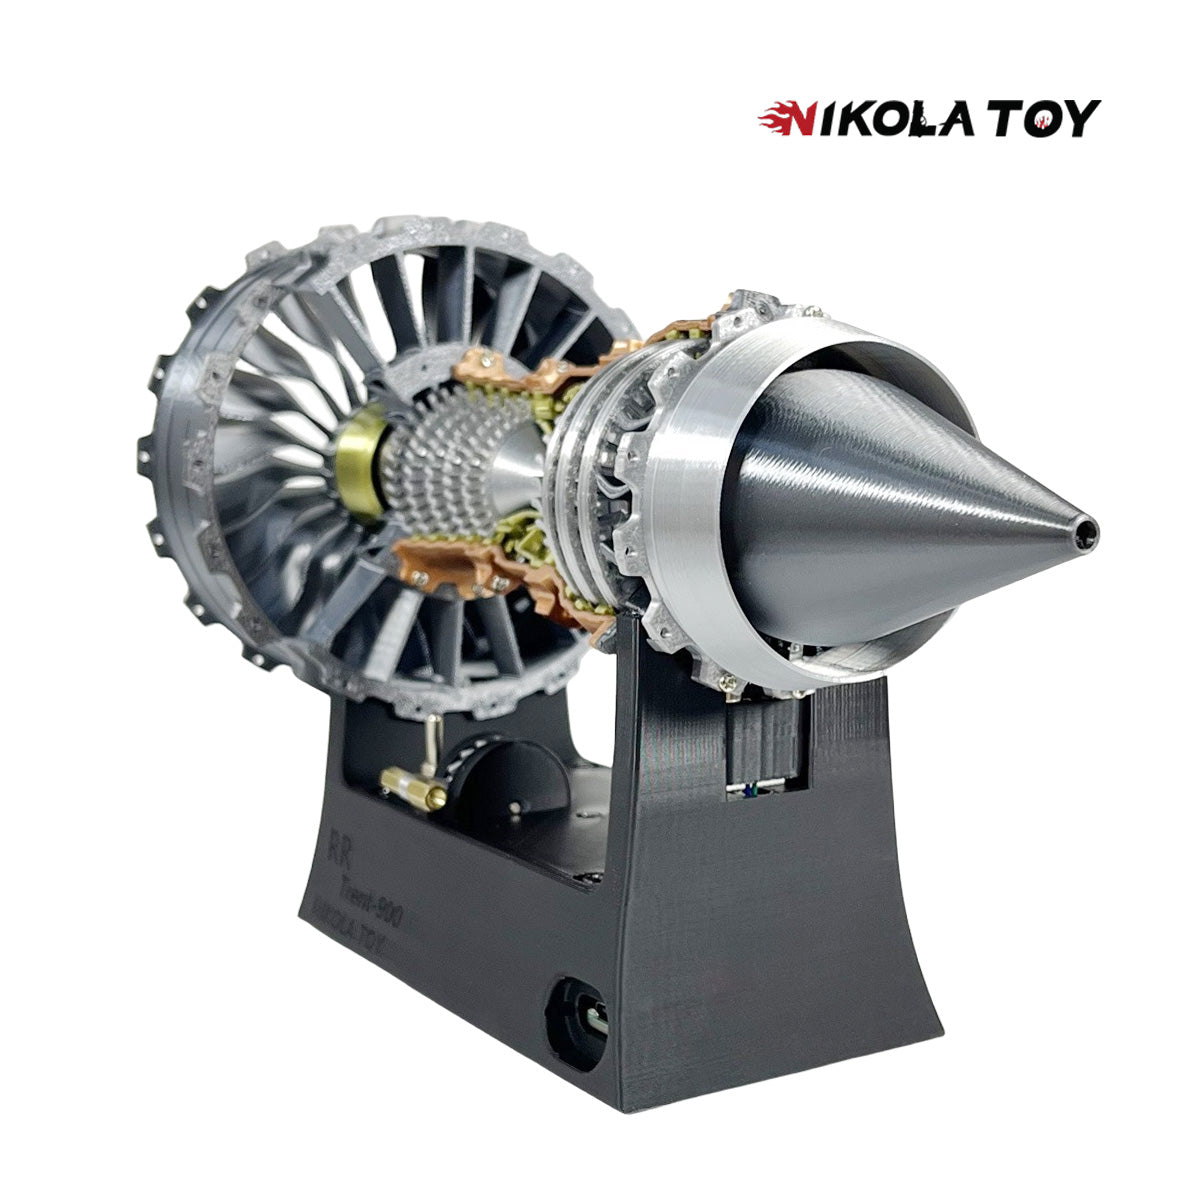 TR900 Turbofan engine model (25cm / 10in) Hot sale!!